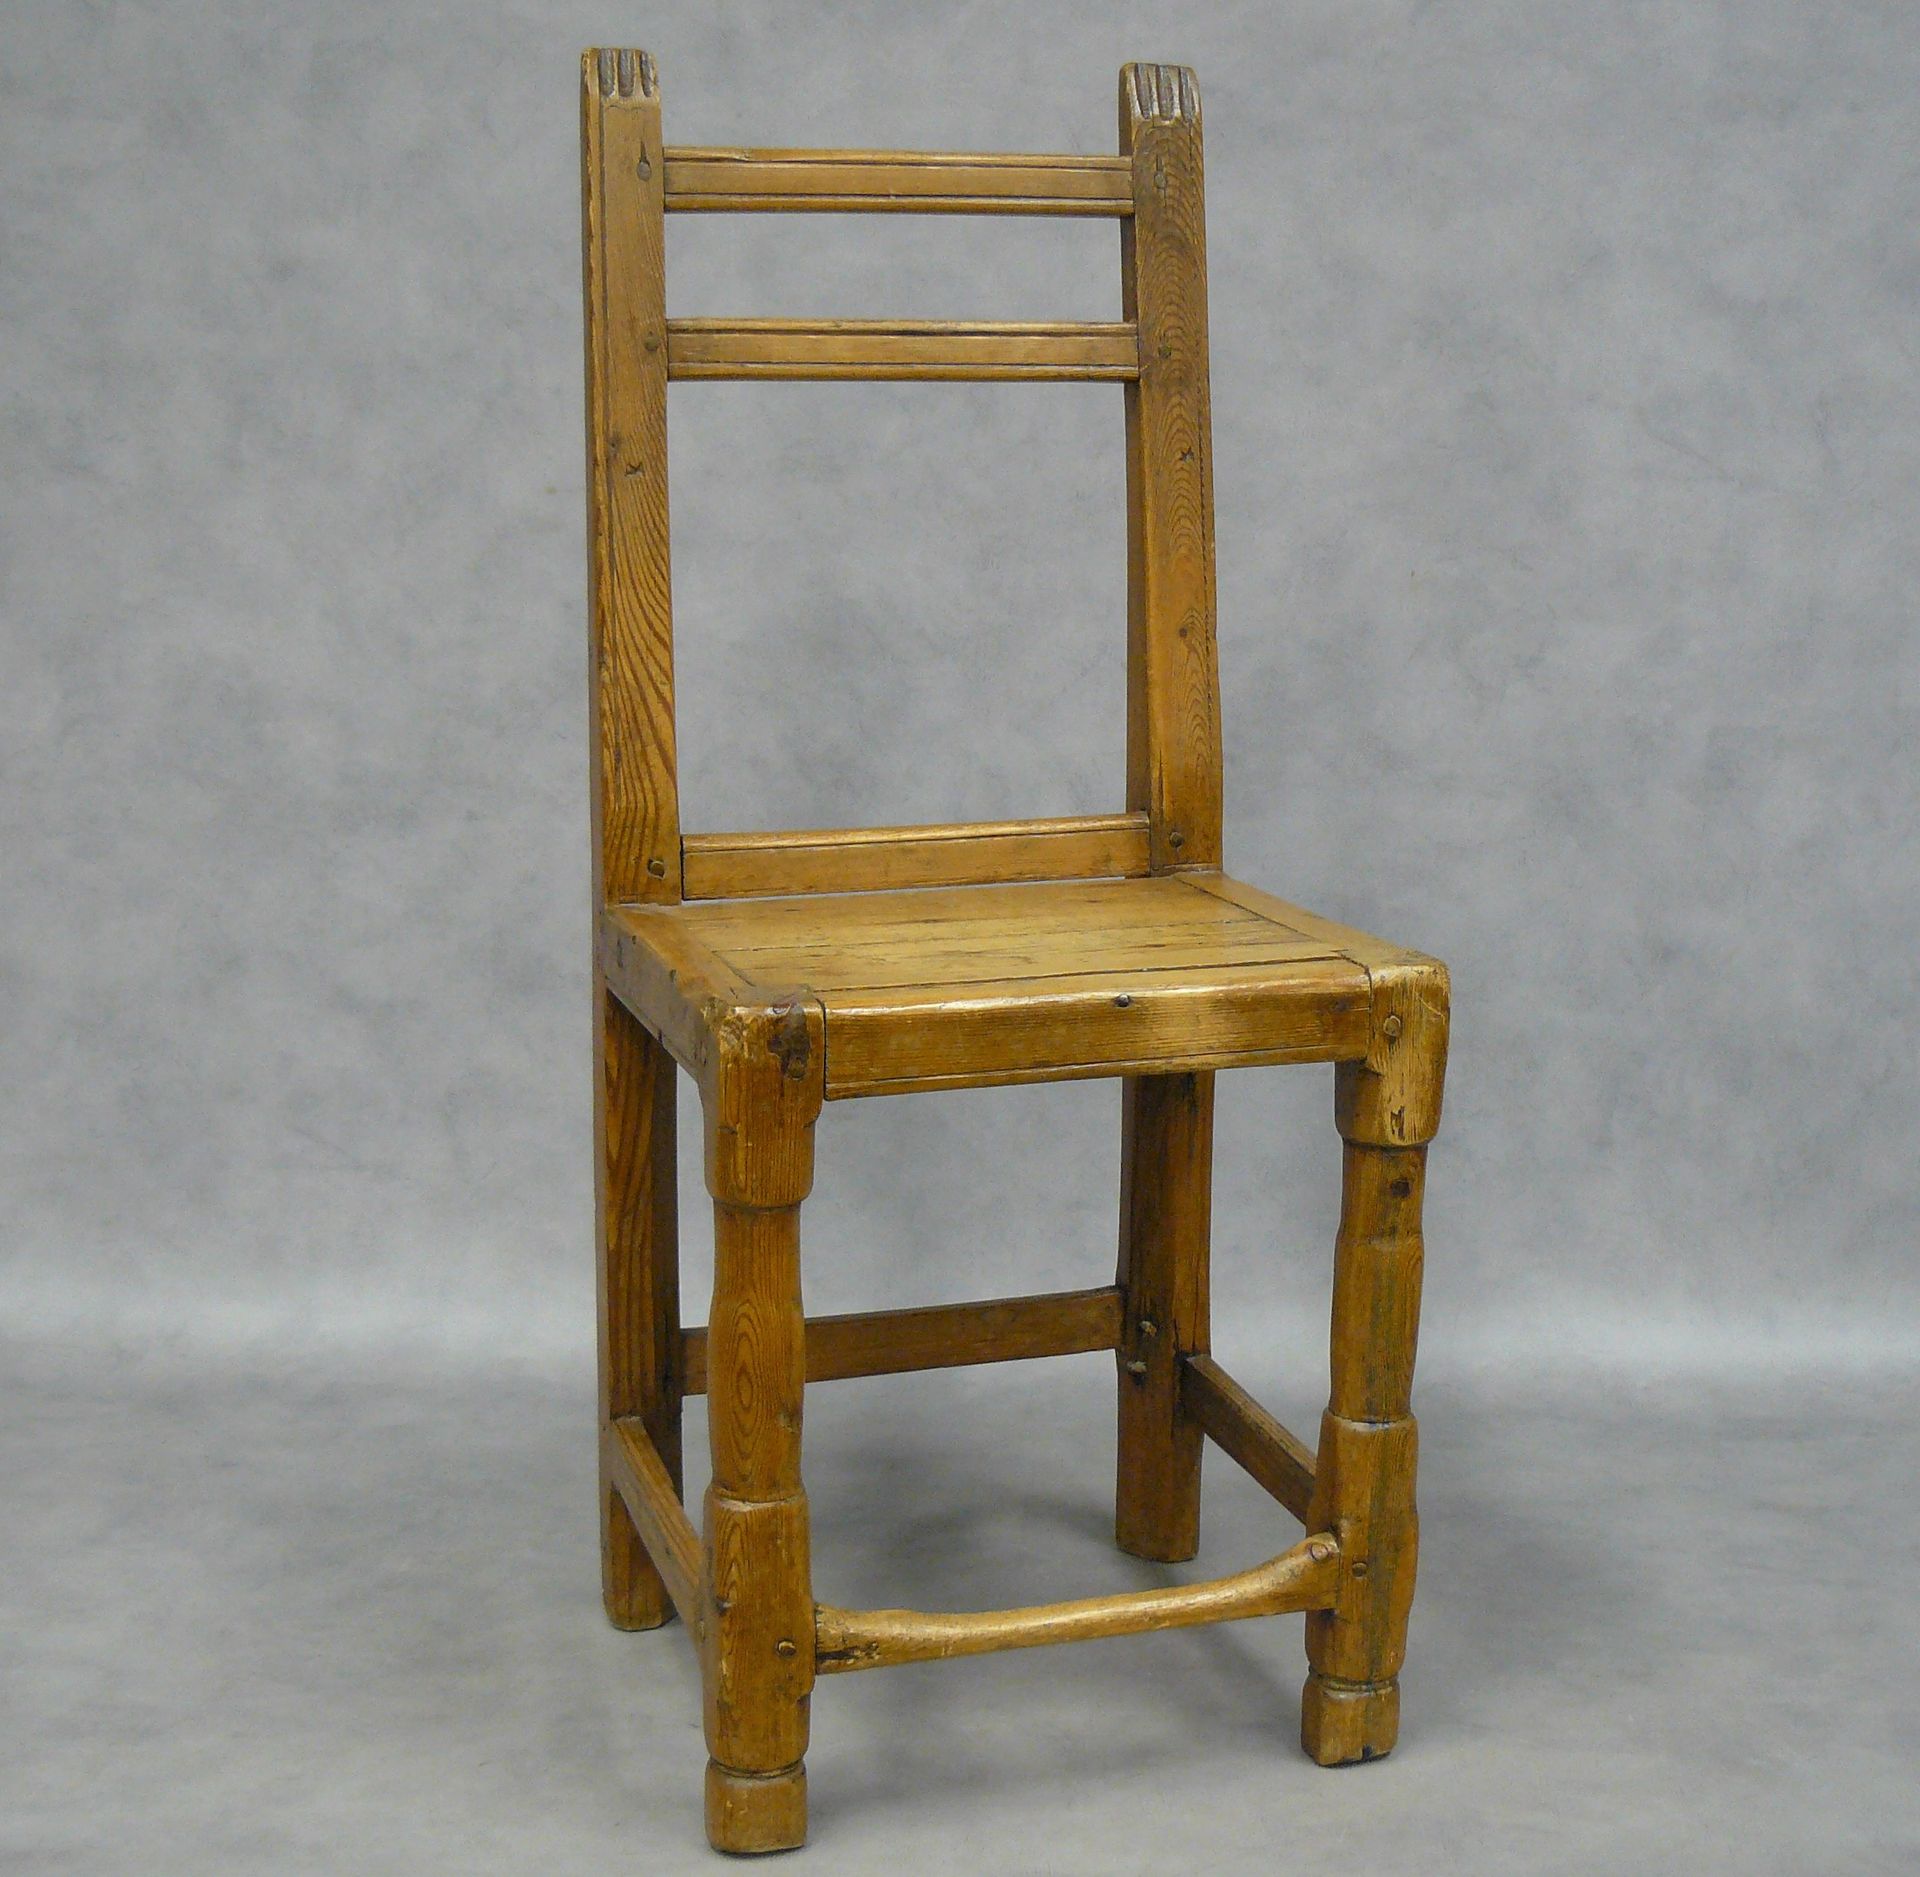 Null ein alter Alpinstuhl, der Sitz leicht trapezförmig - H 82 cm